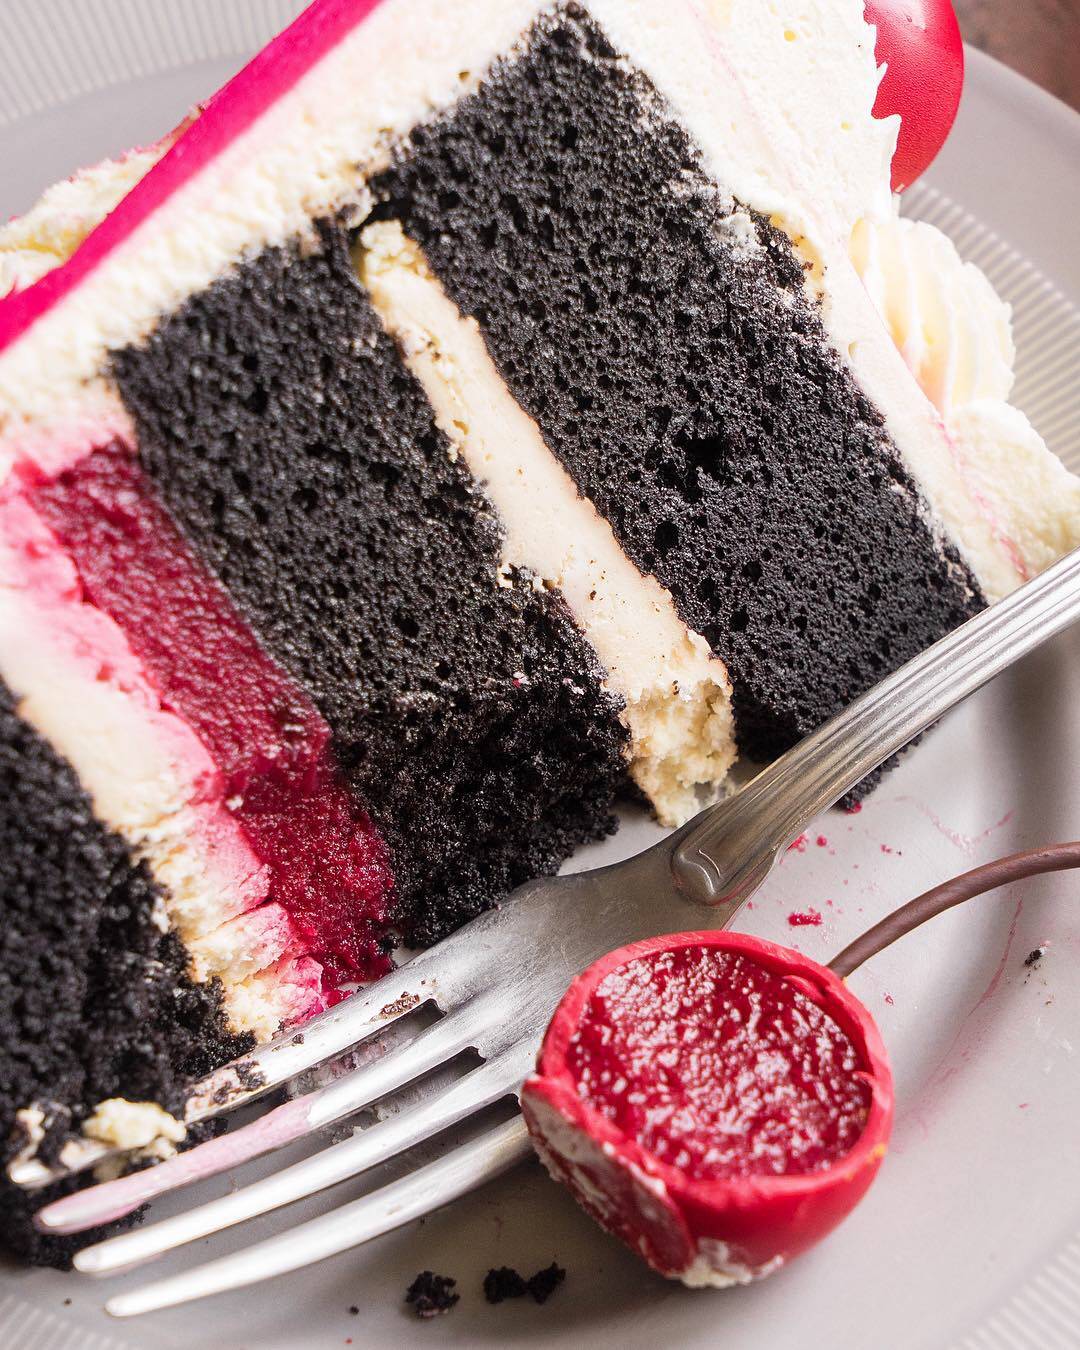 Торт Черный лес – один из самых вкусных и известных тортов на просторах интернета